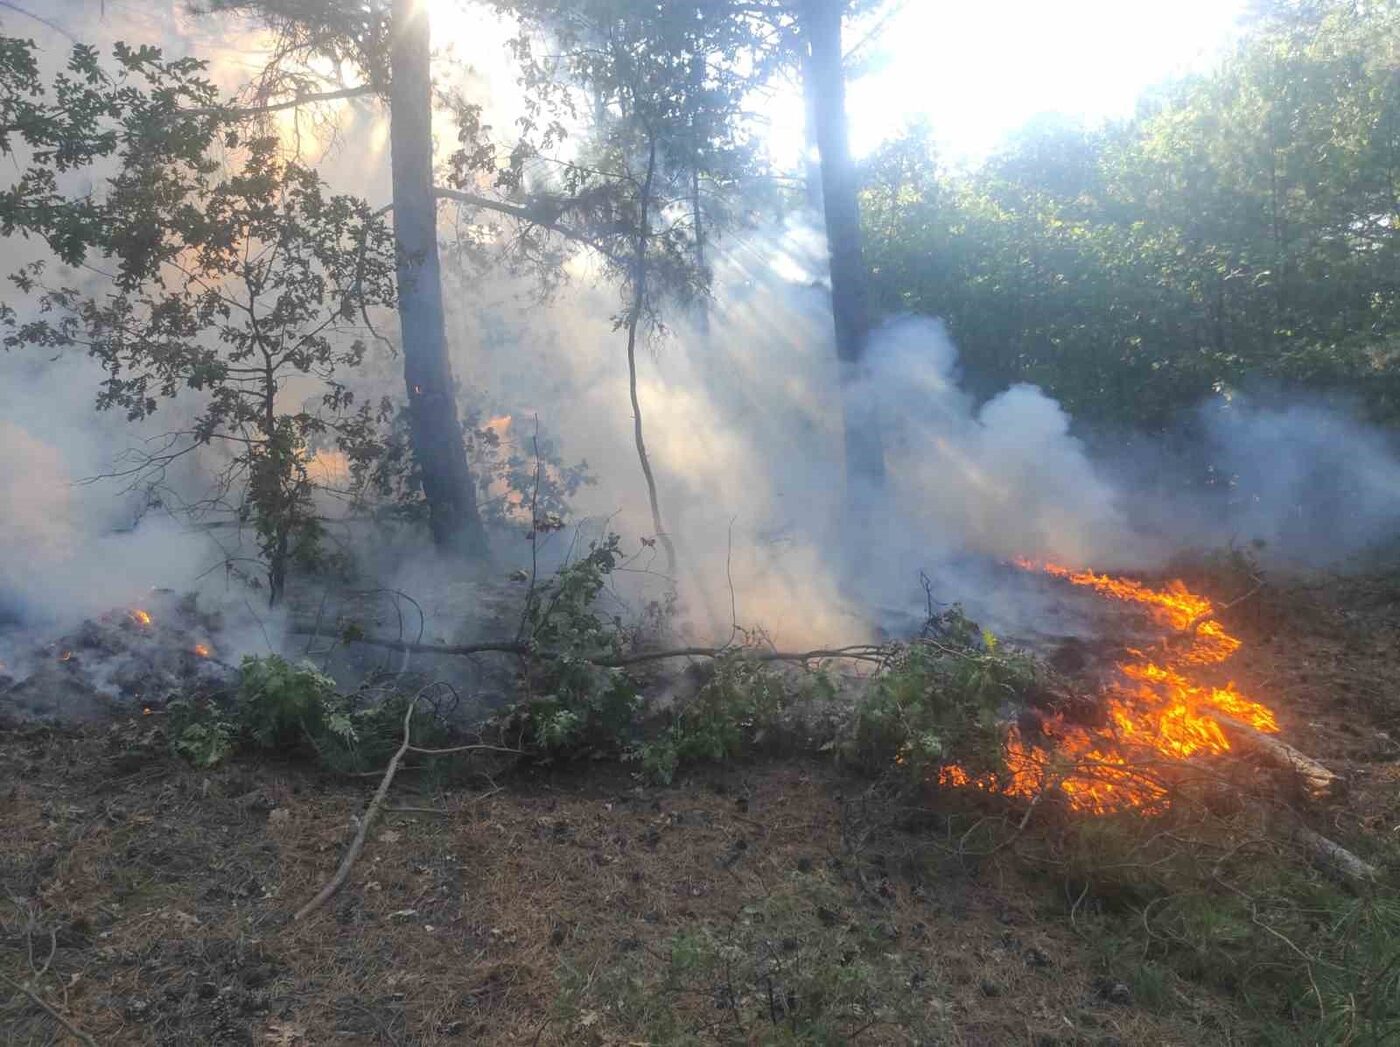 Balıkesir’deki orman yangını kontrol altına alındı